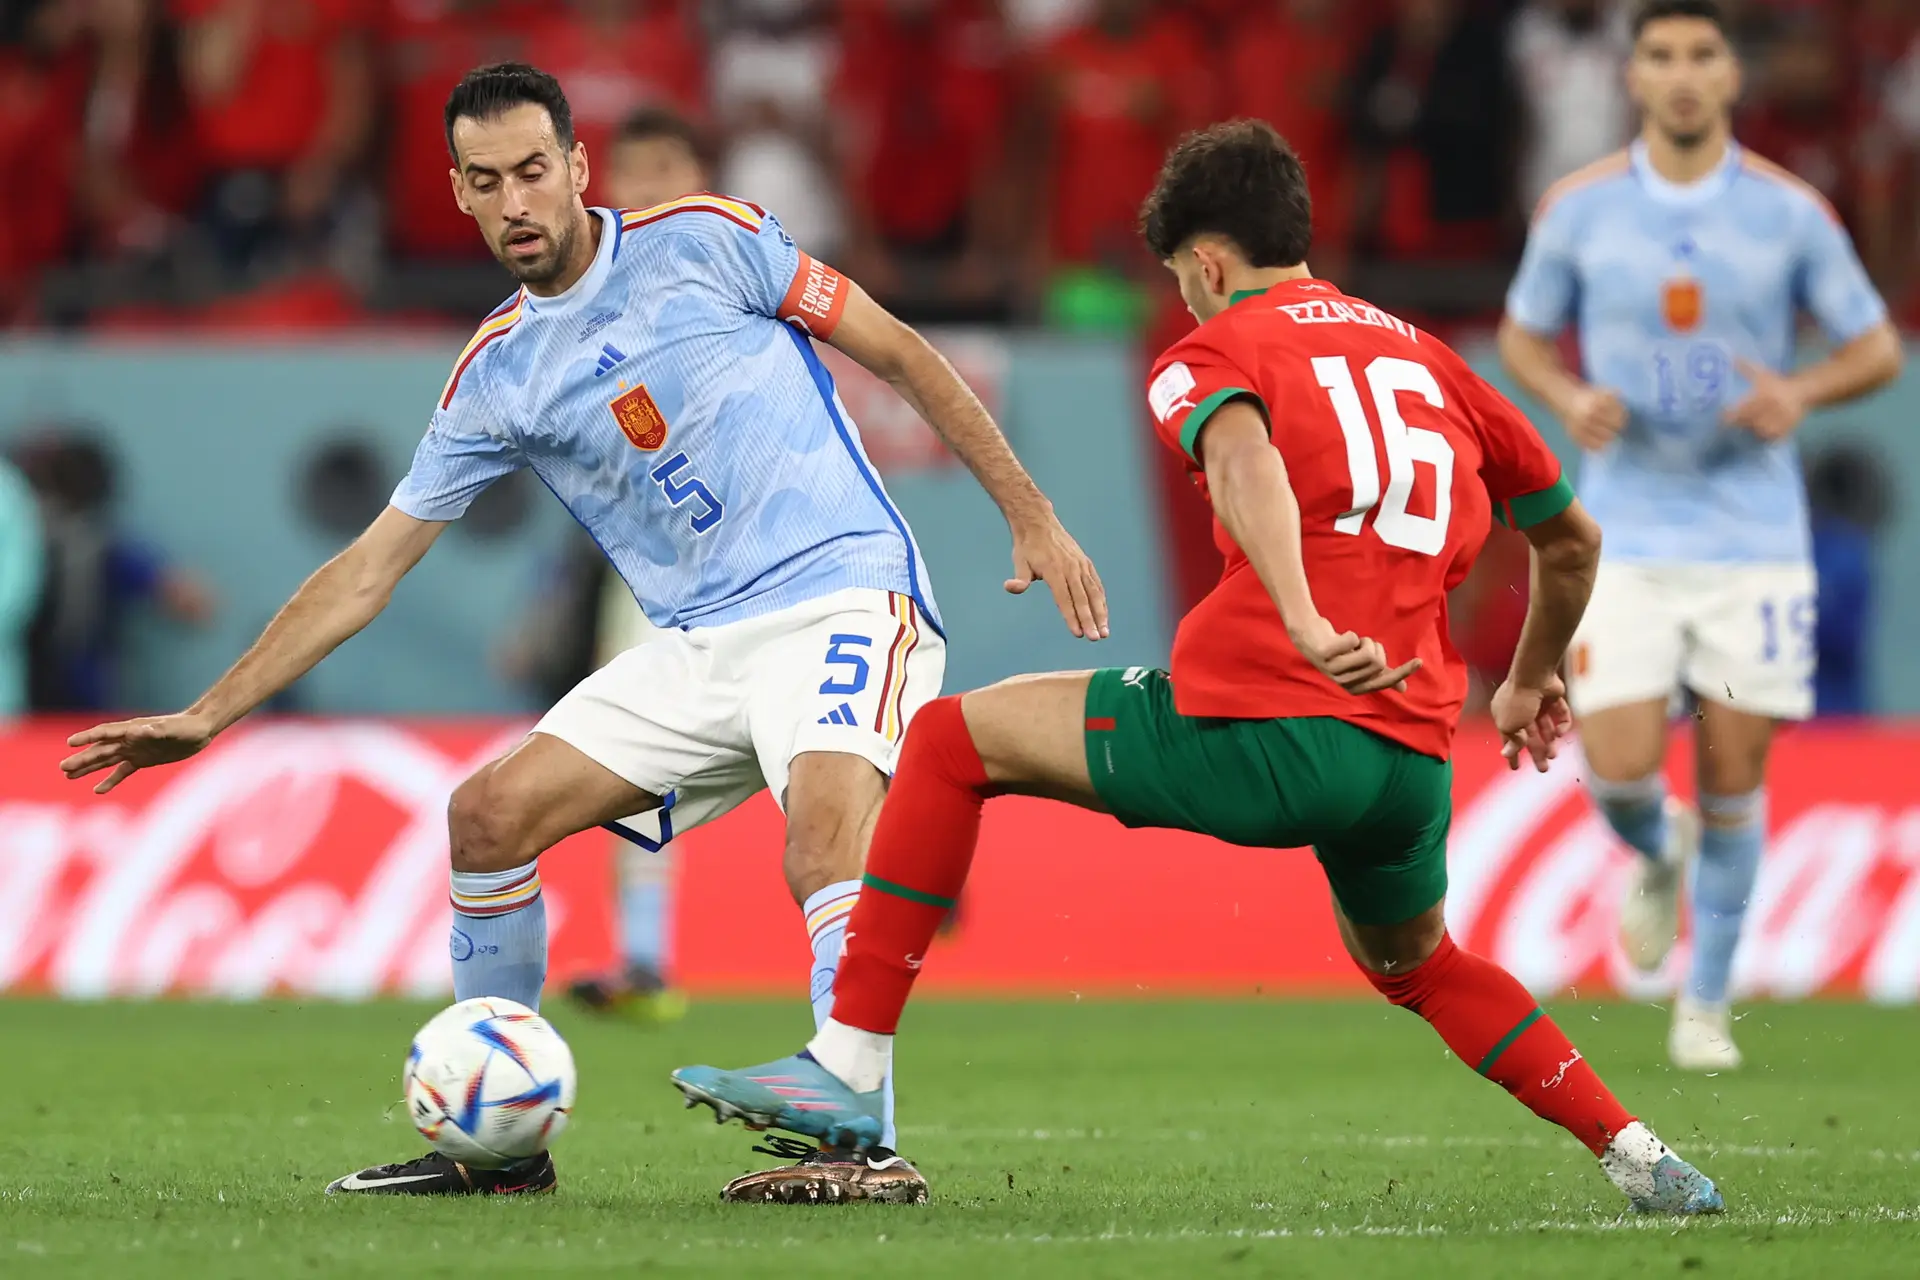 Asensio é titular e Espanha cai para o Marrocos nos pênaltis